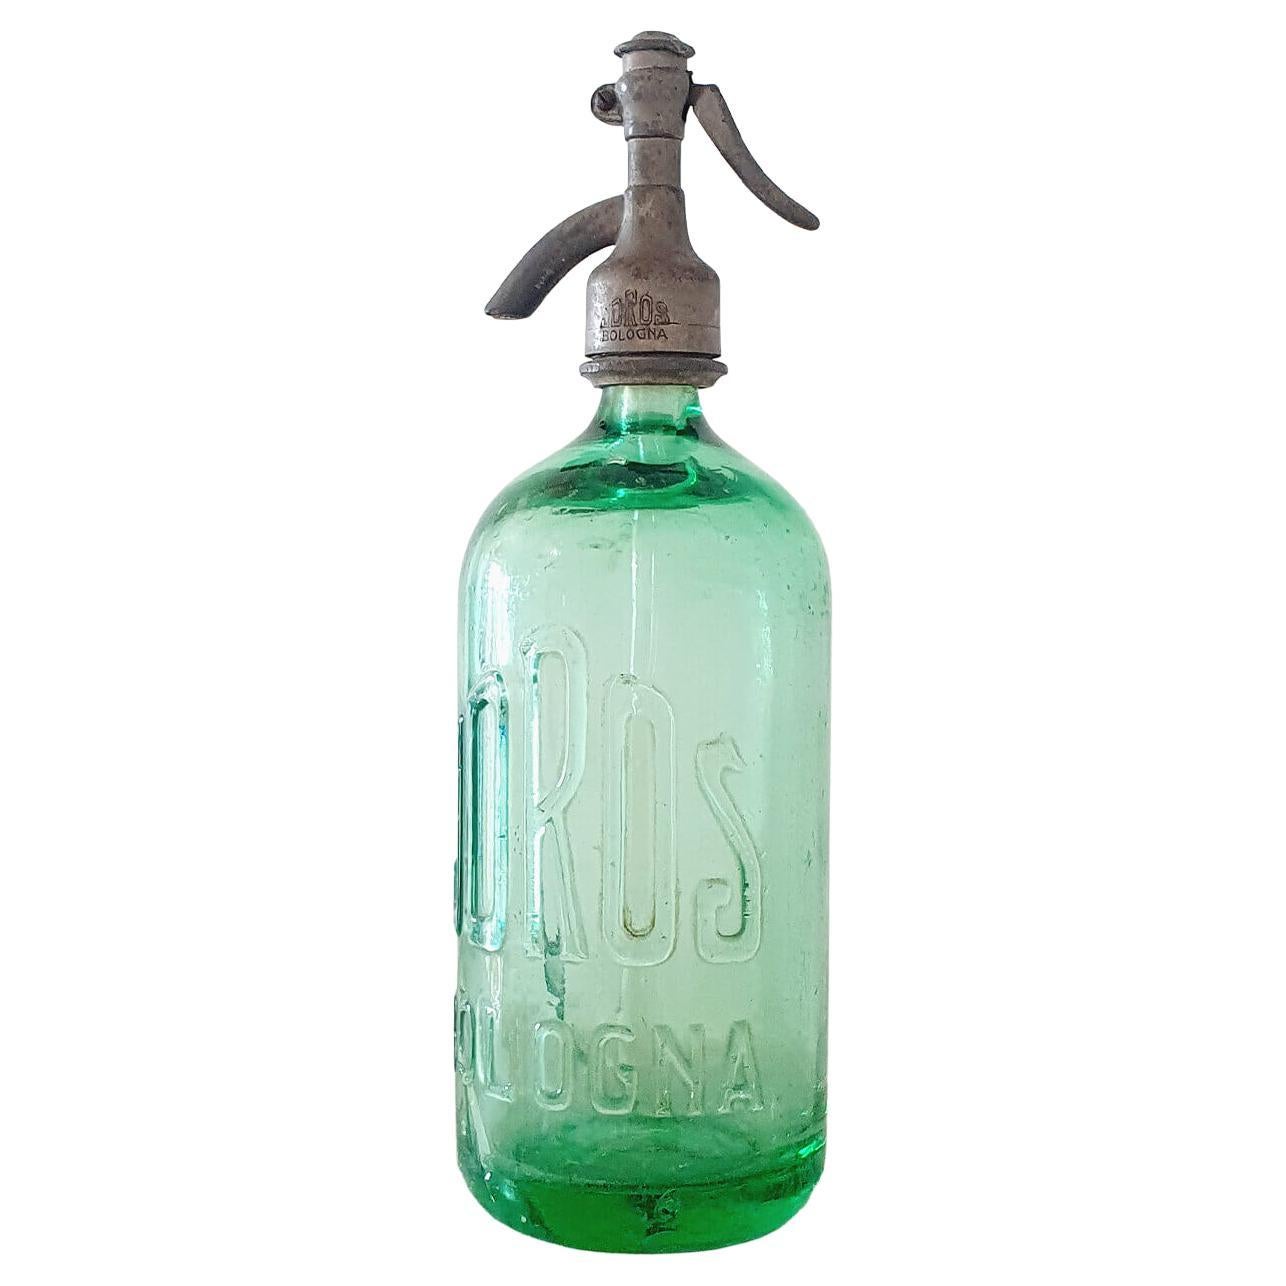 1940s Green Soda Bottle from Bologna